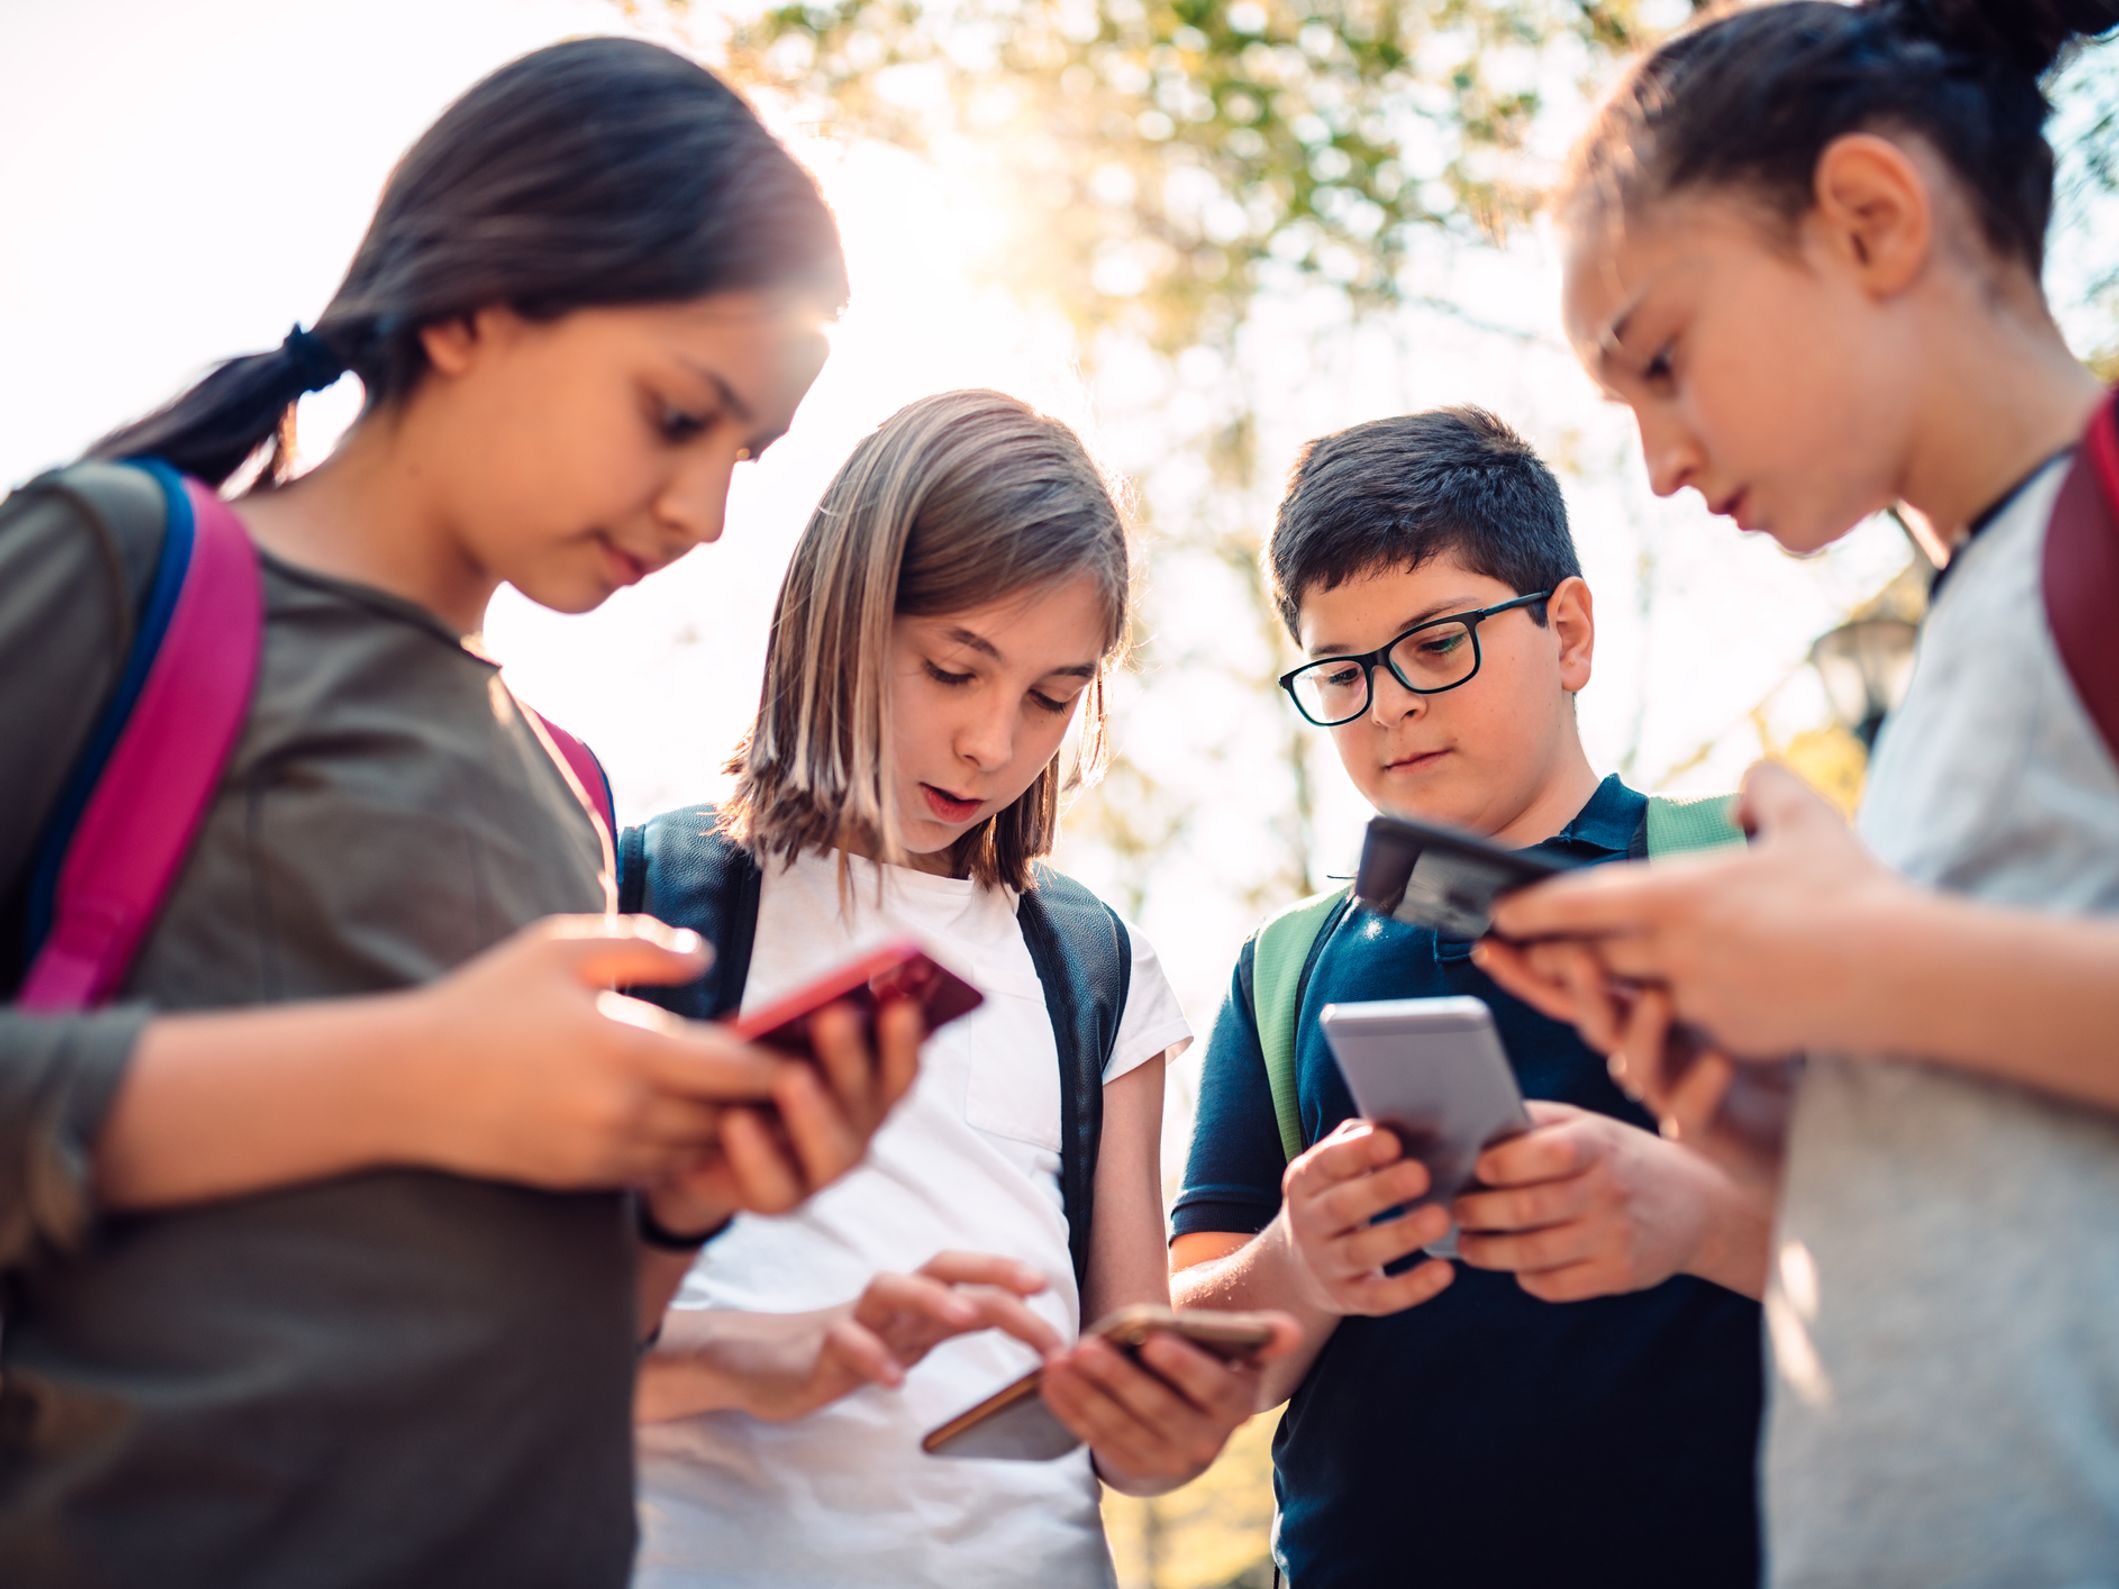 46% des enfants de 6-10 ans sont équipés d'un smartphone